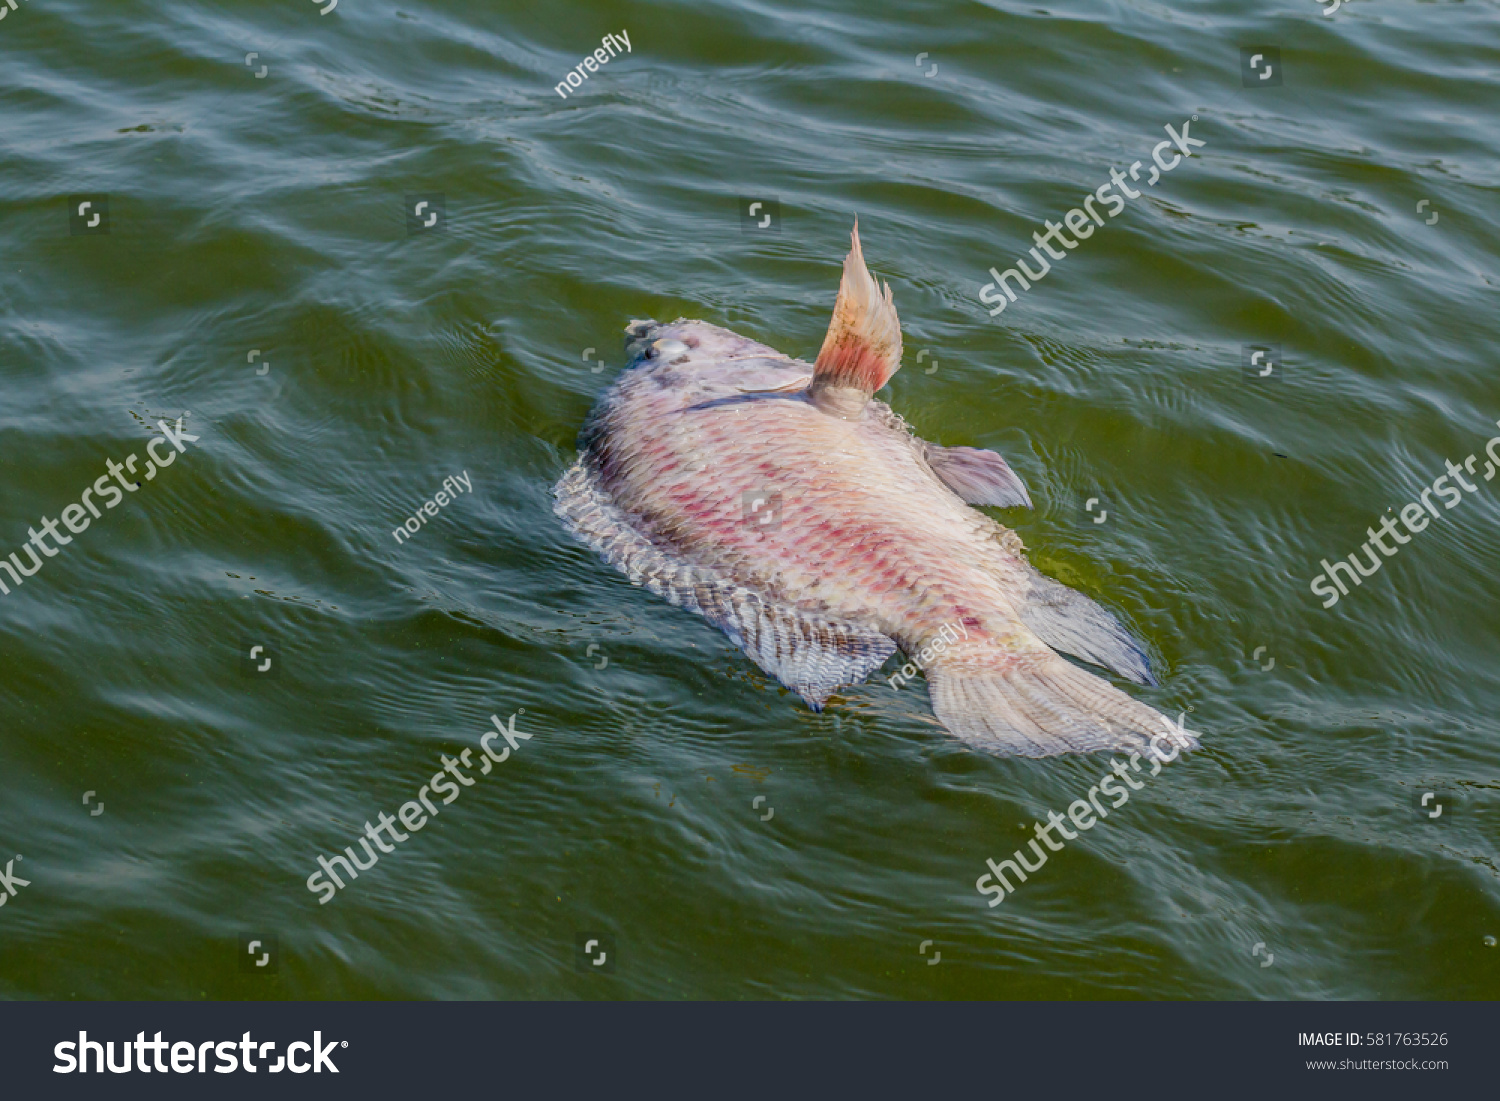 dead fish in water